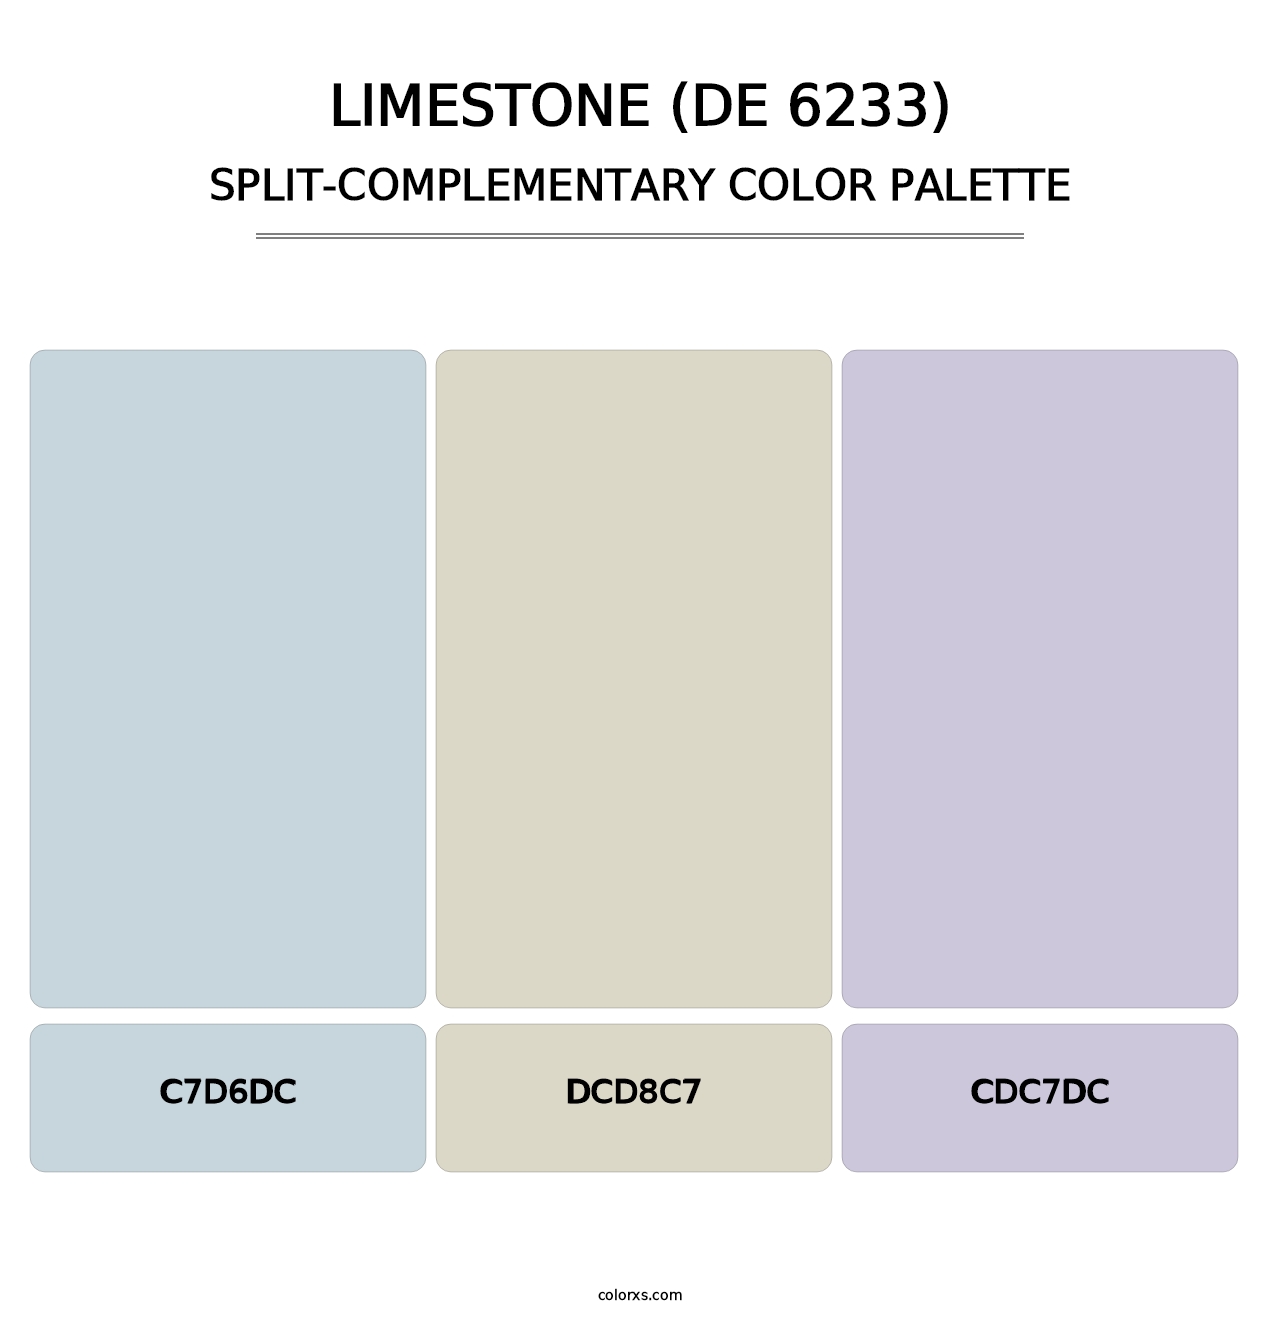 Limestone (DE 6233) - Split-Complementary Color Palette